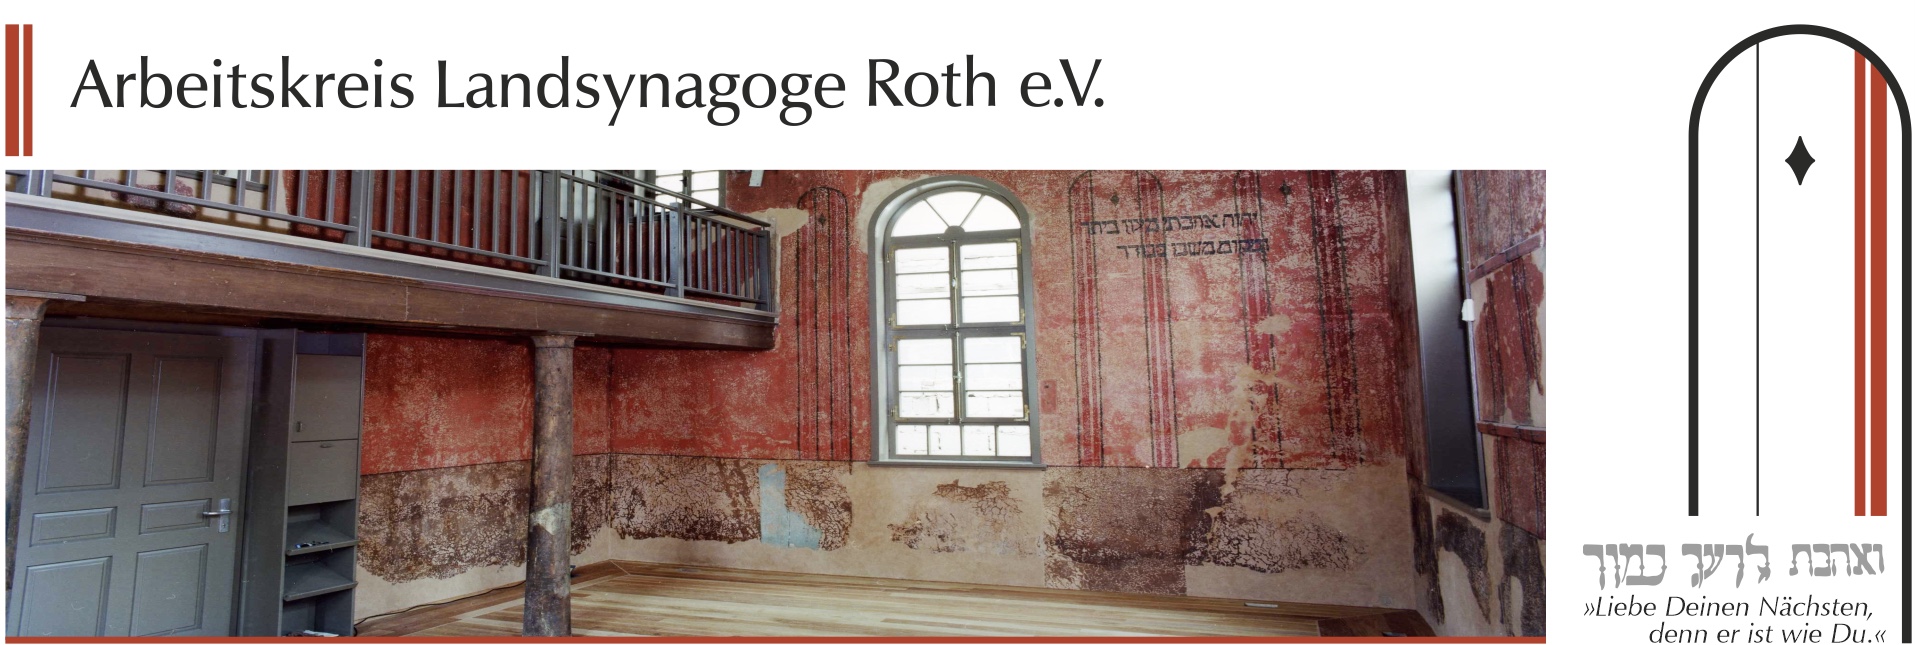 Innenansicht der renovierten Synagoge ohne Mobiliar